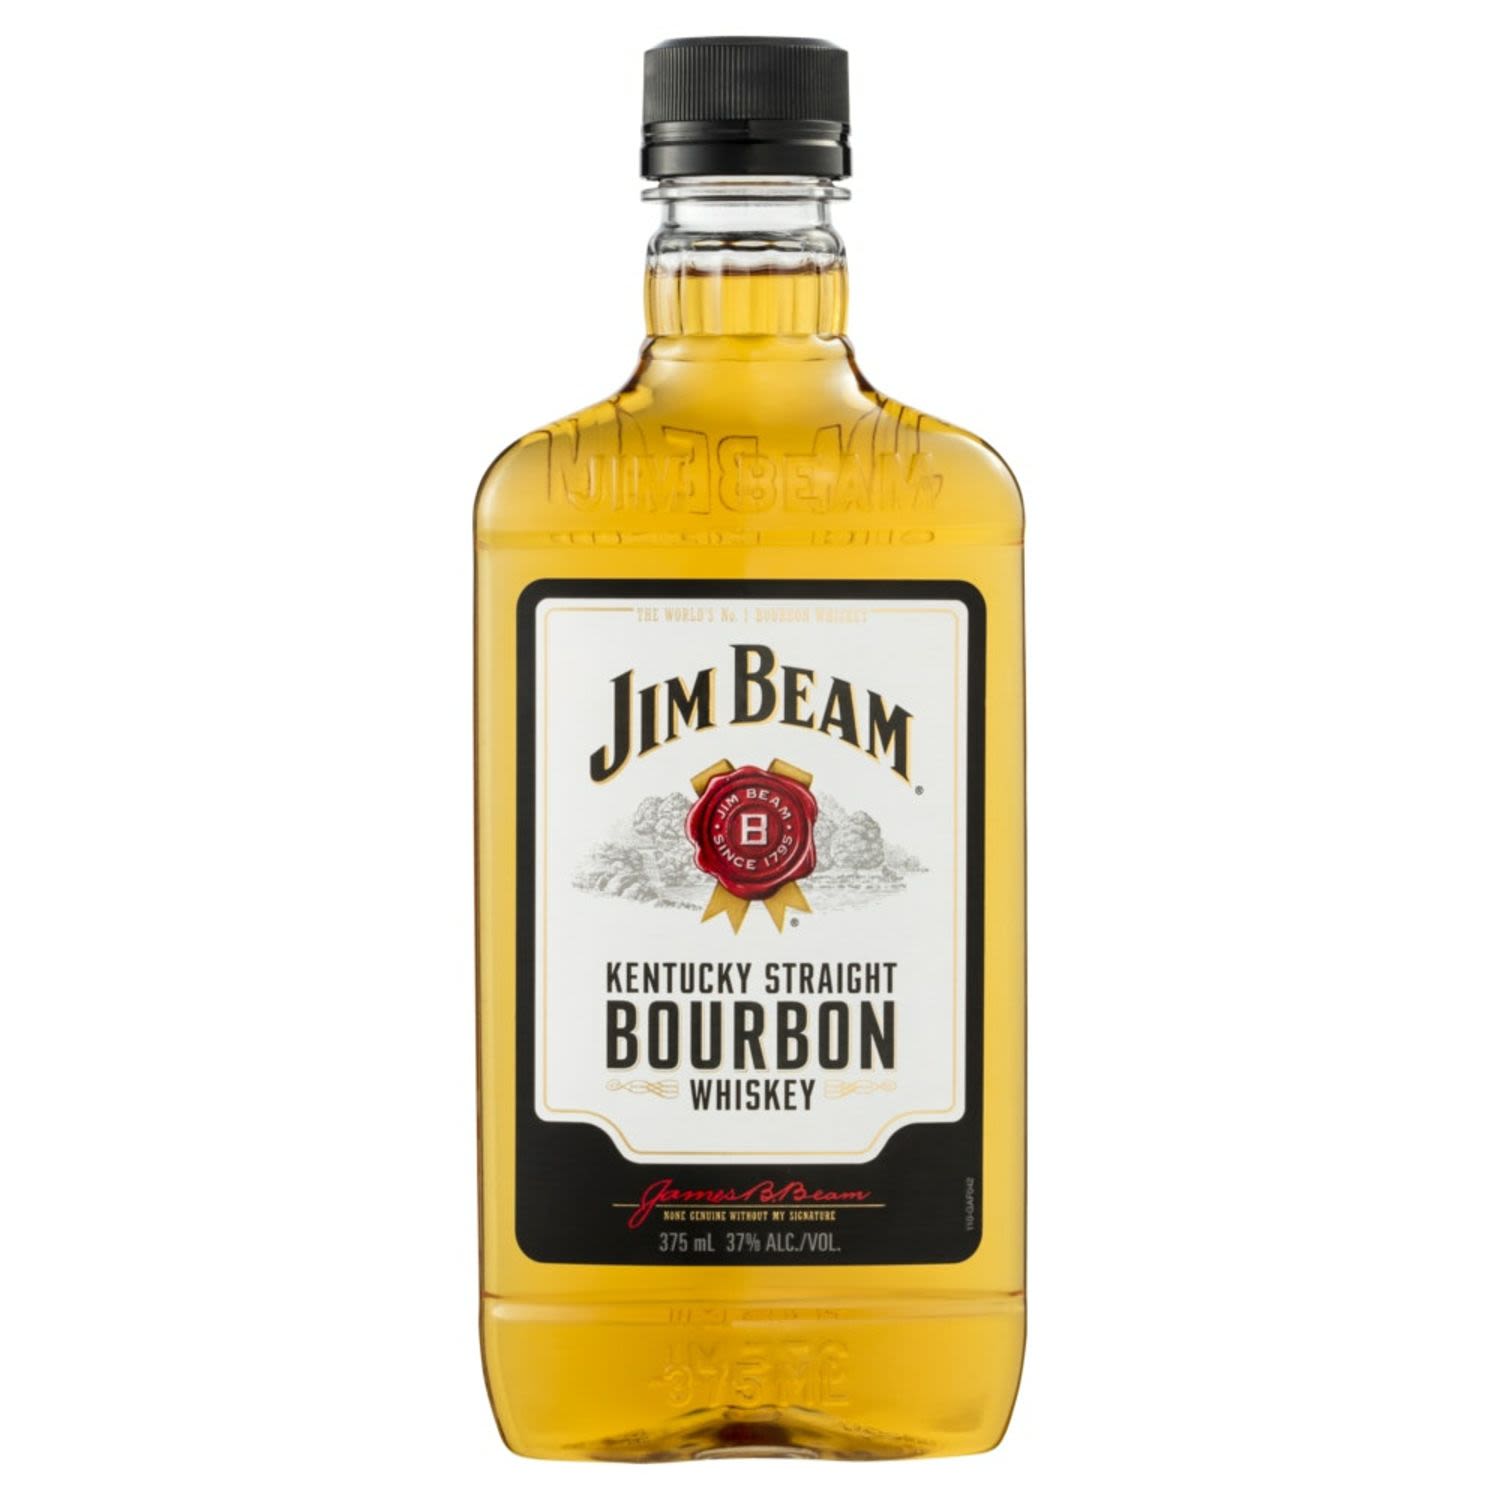 Jim Beam White Label 375mL Bottle